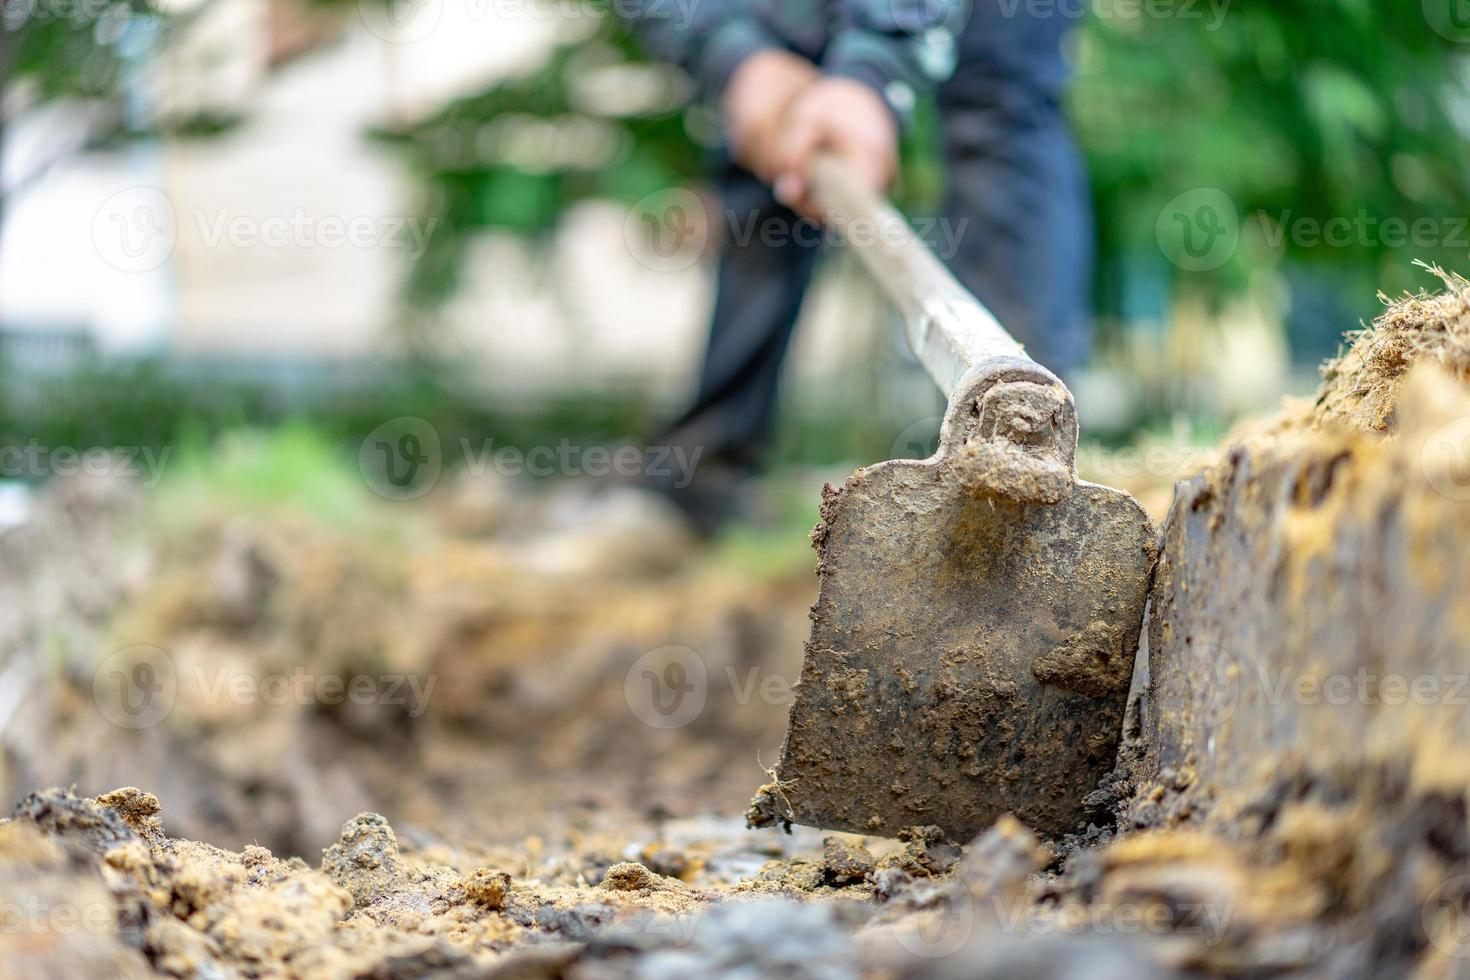 gärtner gräbt den boden mit seiner ausrüstung für die gartenarbeit und bereitet land für die bepflanzung vor. foto